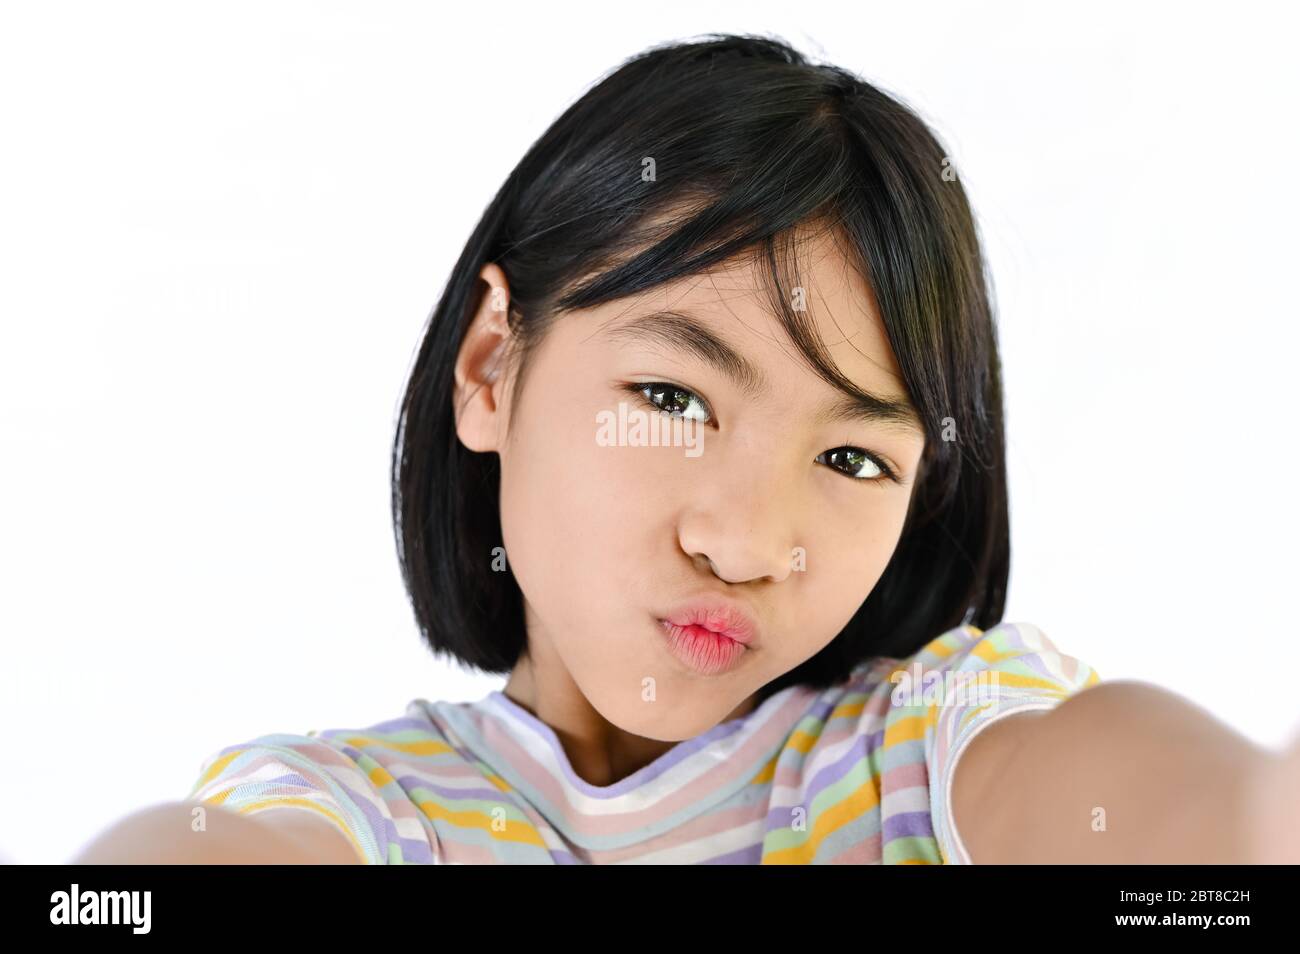 Asiatische Kind Mädchen Selfie glücklich Gesicht. Hand Smartphone nehmen Selfie mit Kamera auf weißem Hintergrund Stockfoto